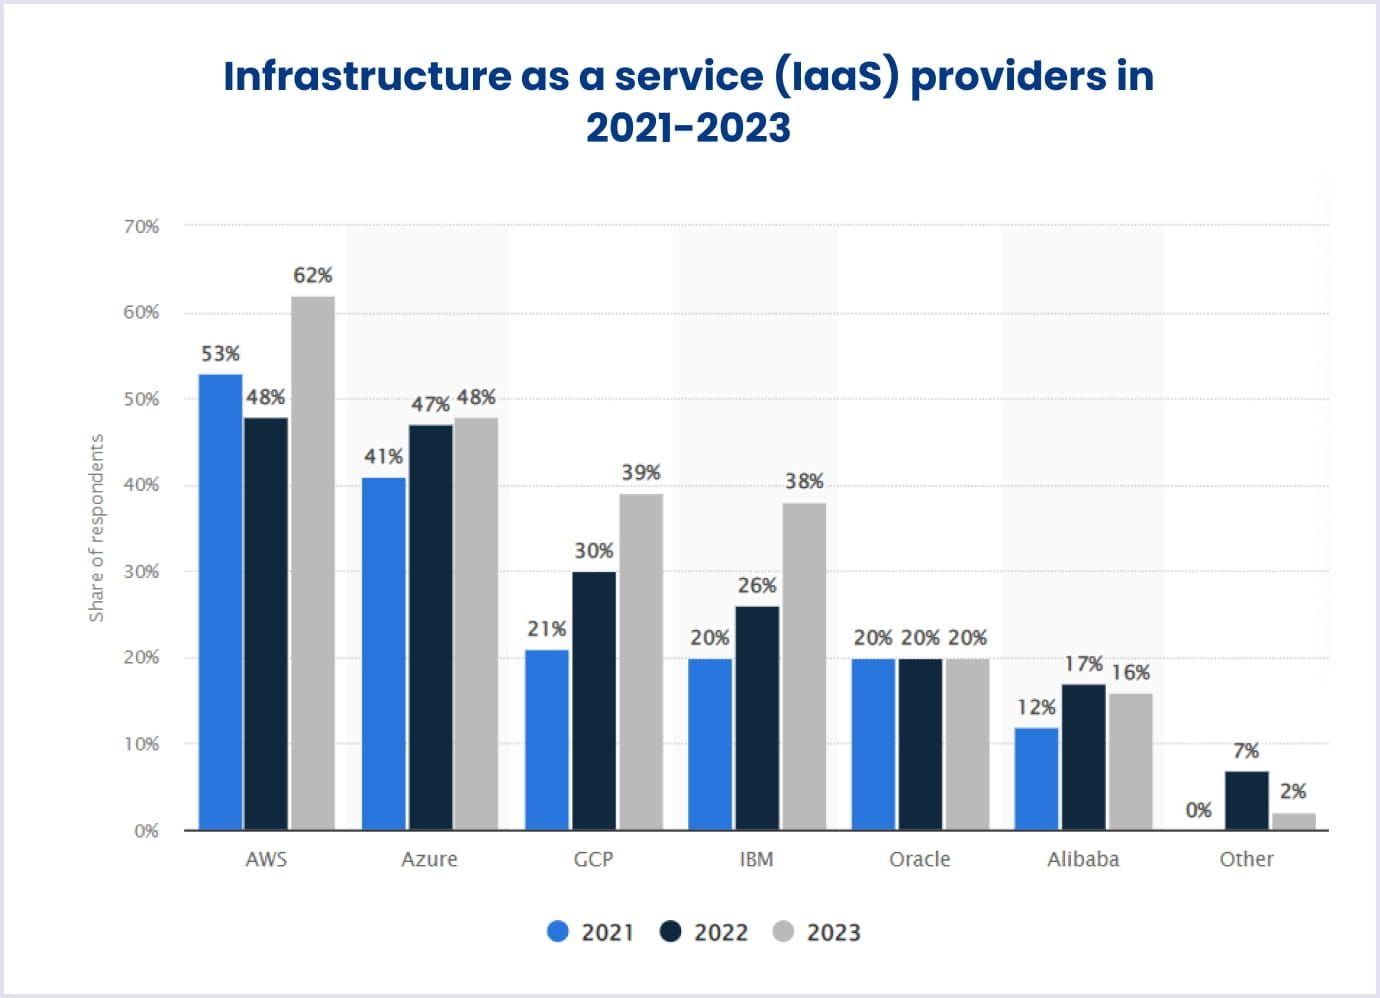 IaaS providers in 2021-2023